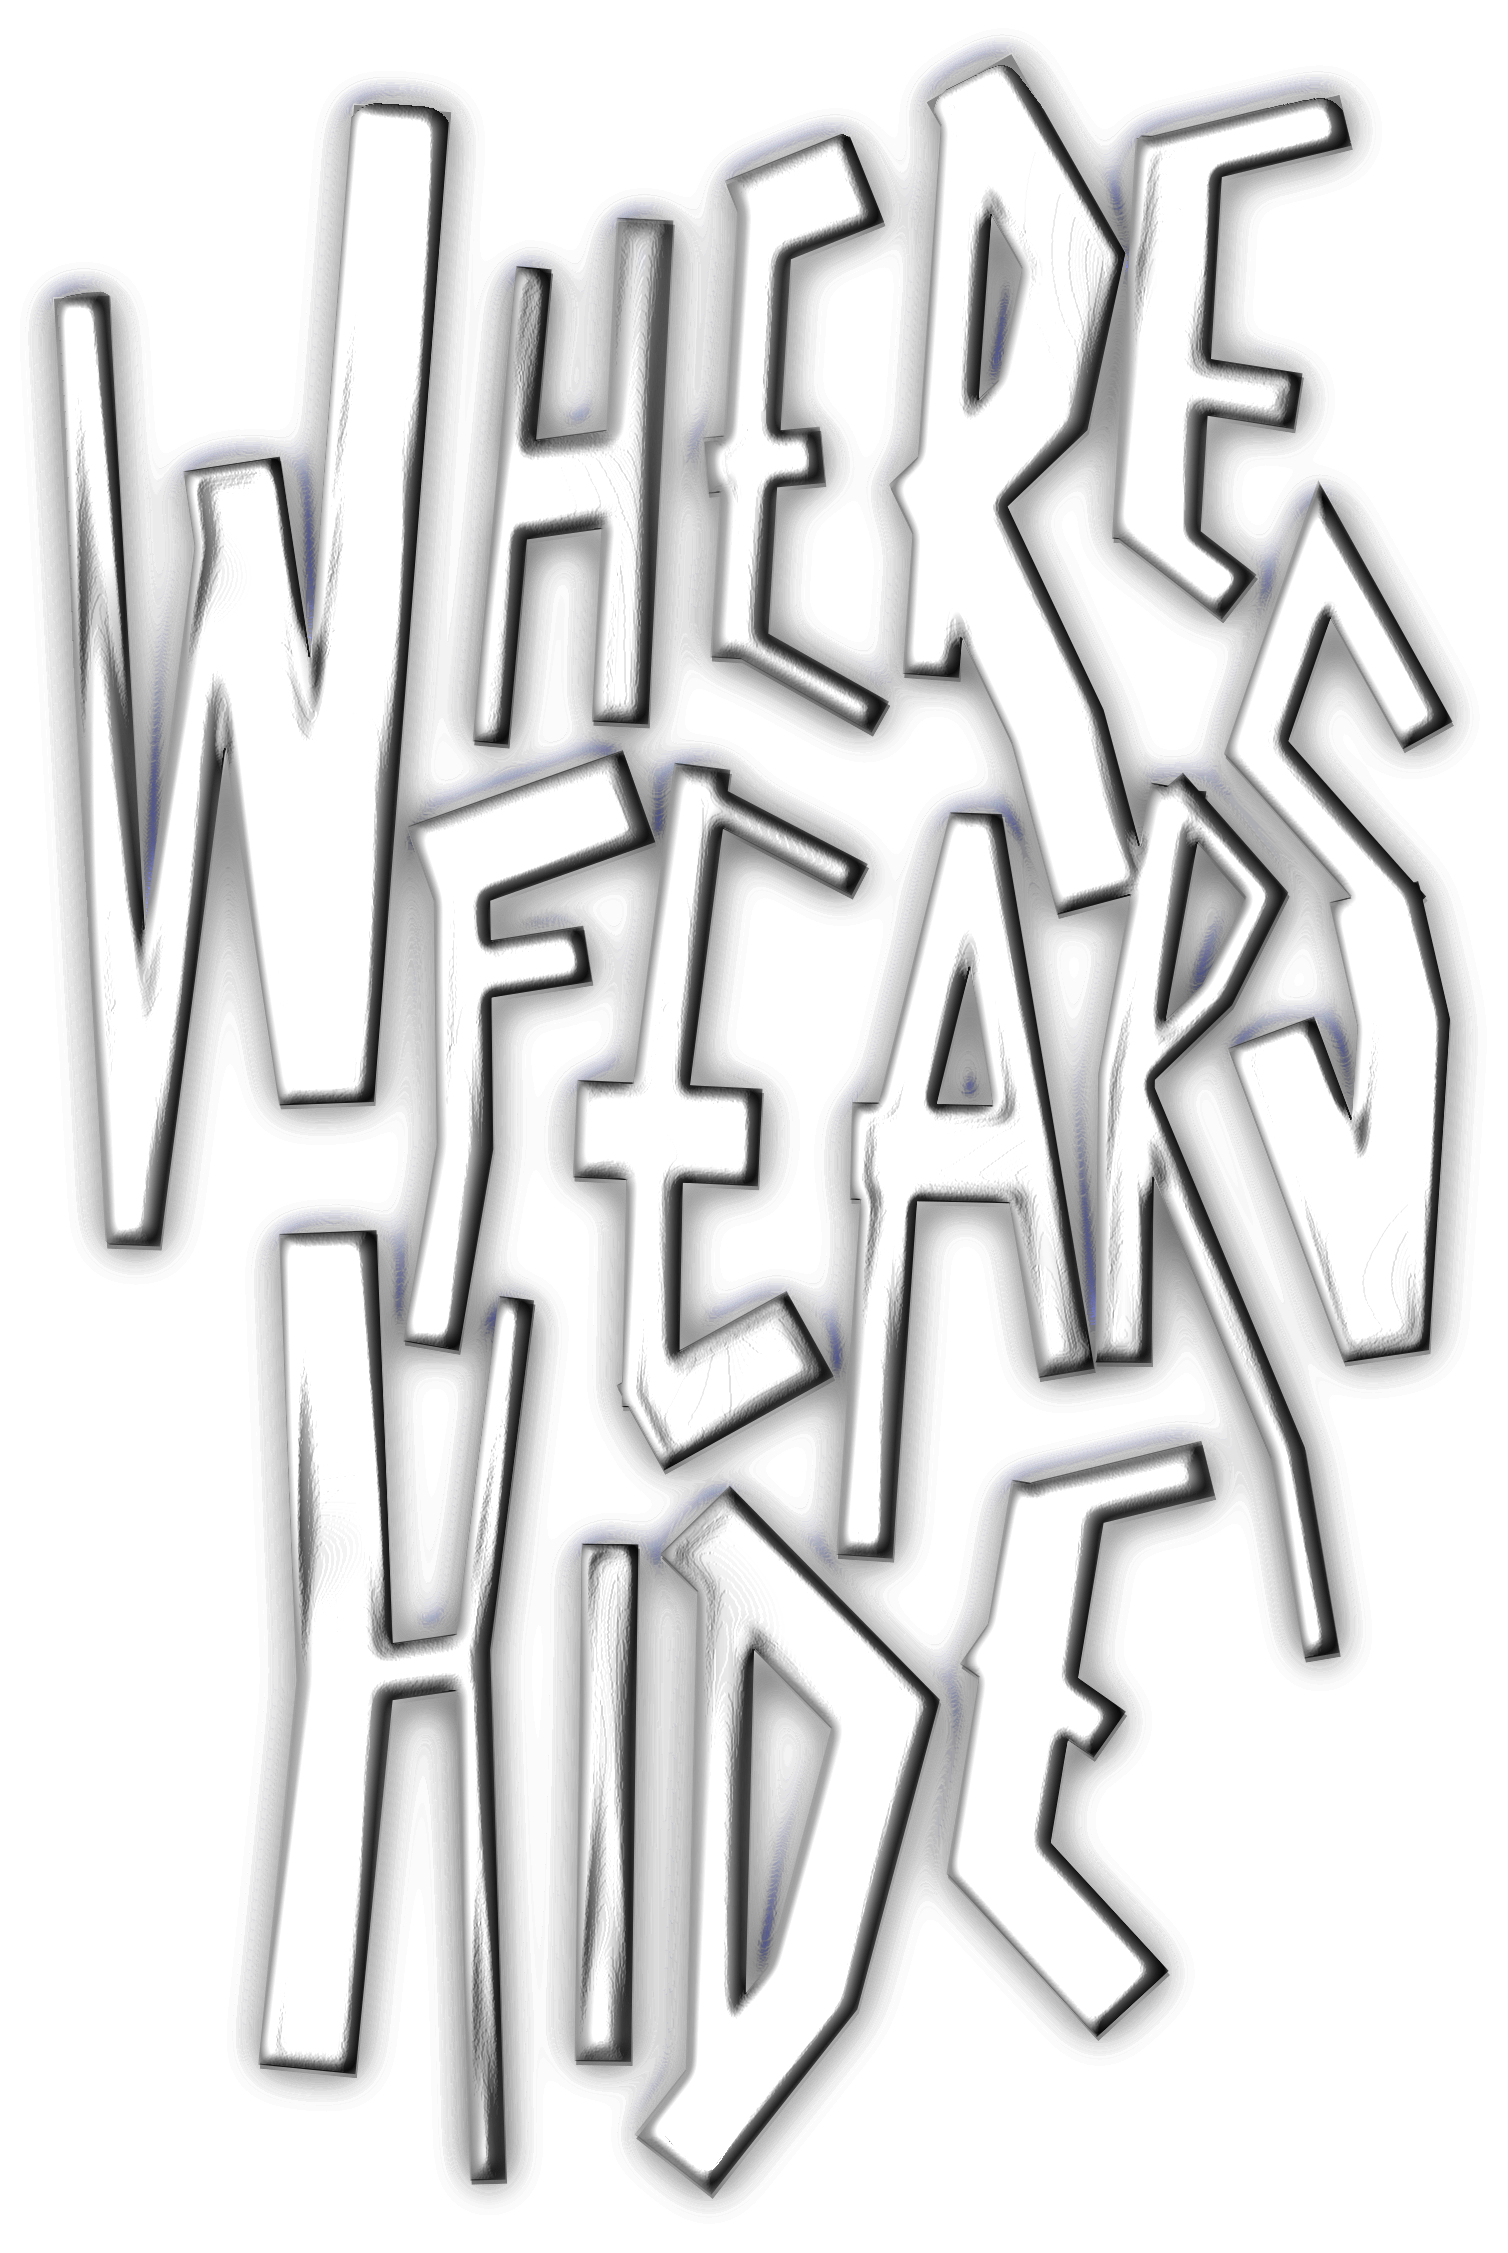 Where Fears Hide